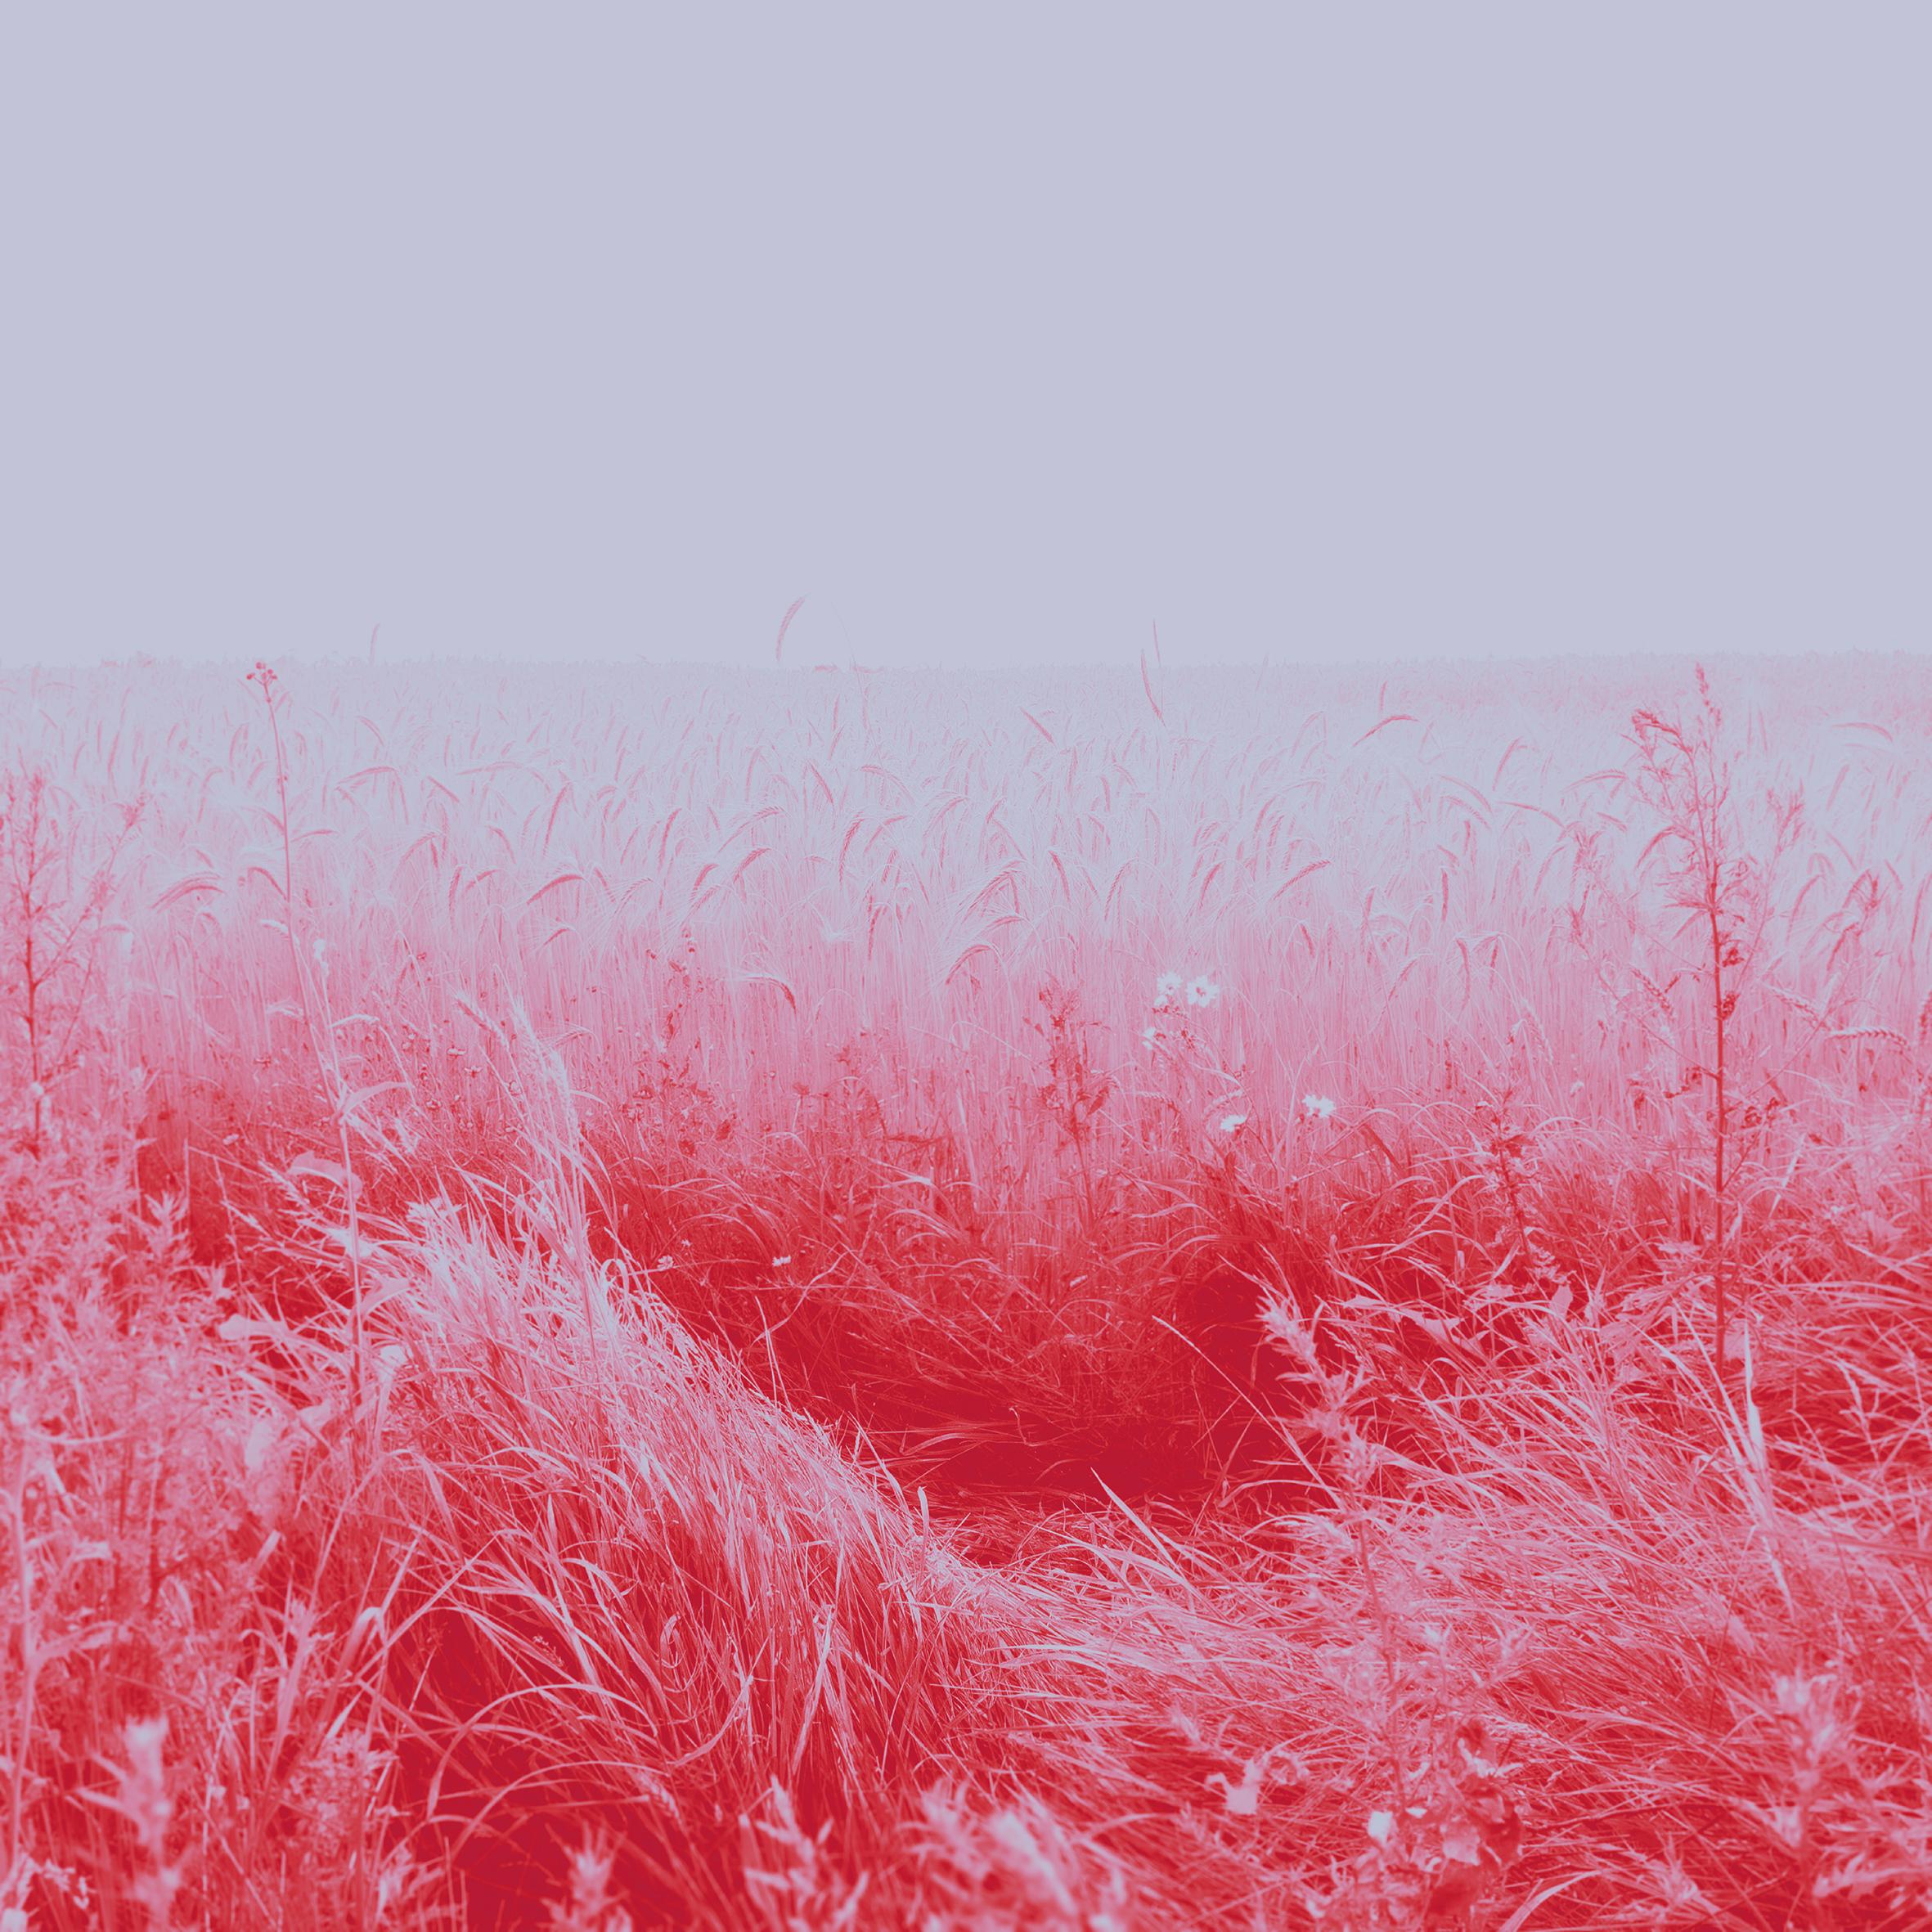 Wheat fields in pink